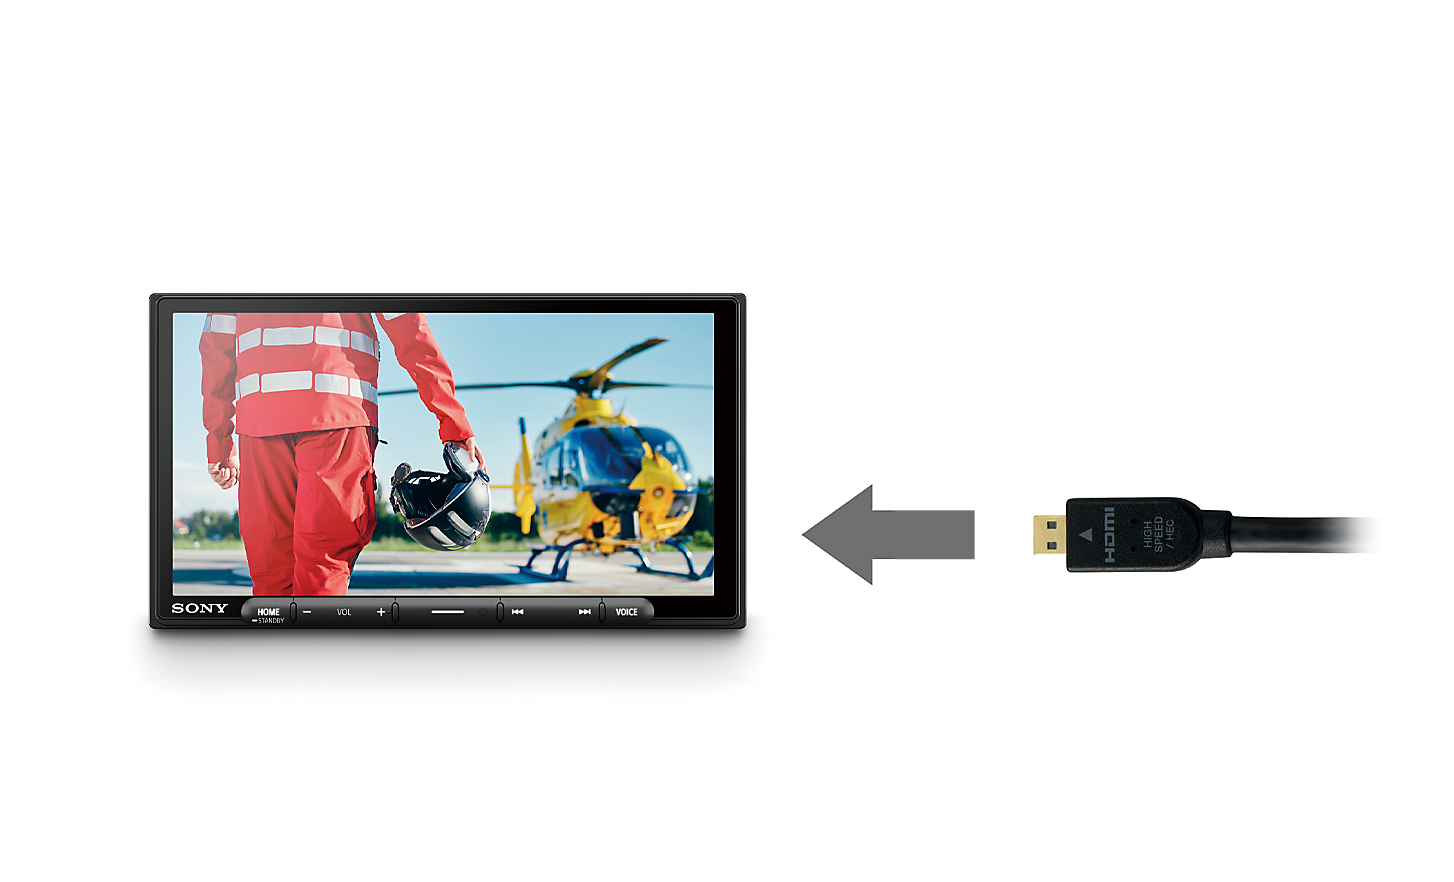 Snímek kabelu HDMI se šipkou směřující směrem k přehrávači XAV-AX6050 s pilotem a helikoptérou na obrazovce